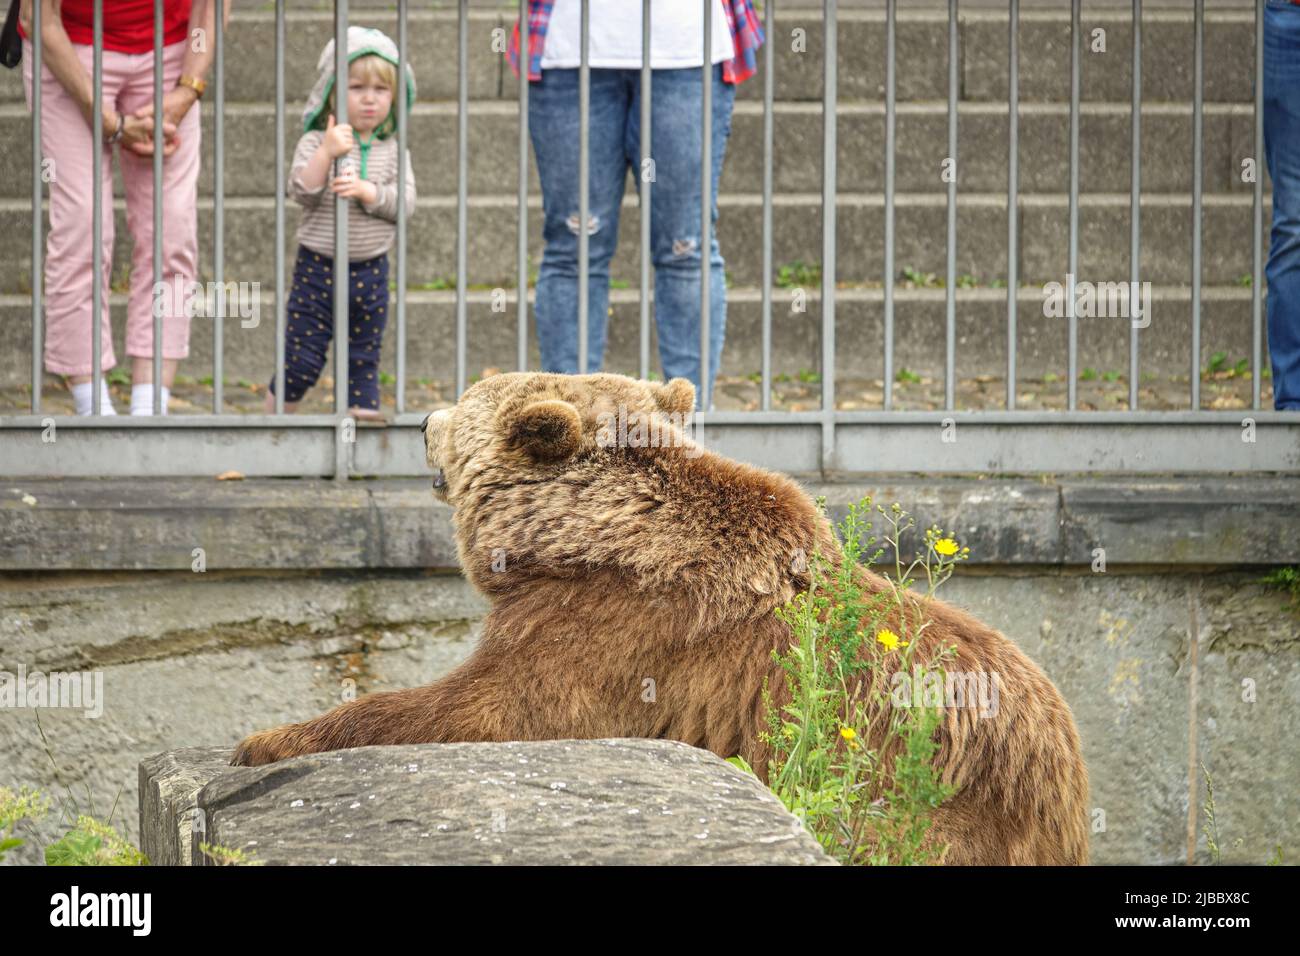 Bärenpark Bern. Die Bärengraben ist eines der beliebtesten Touristenziele für Kinder. Bern, Schweiz - Juni 2022 Stockfoto